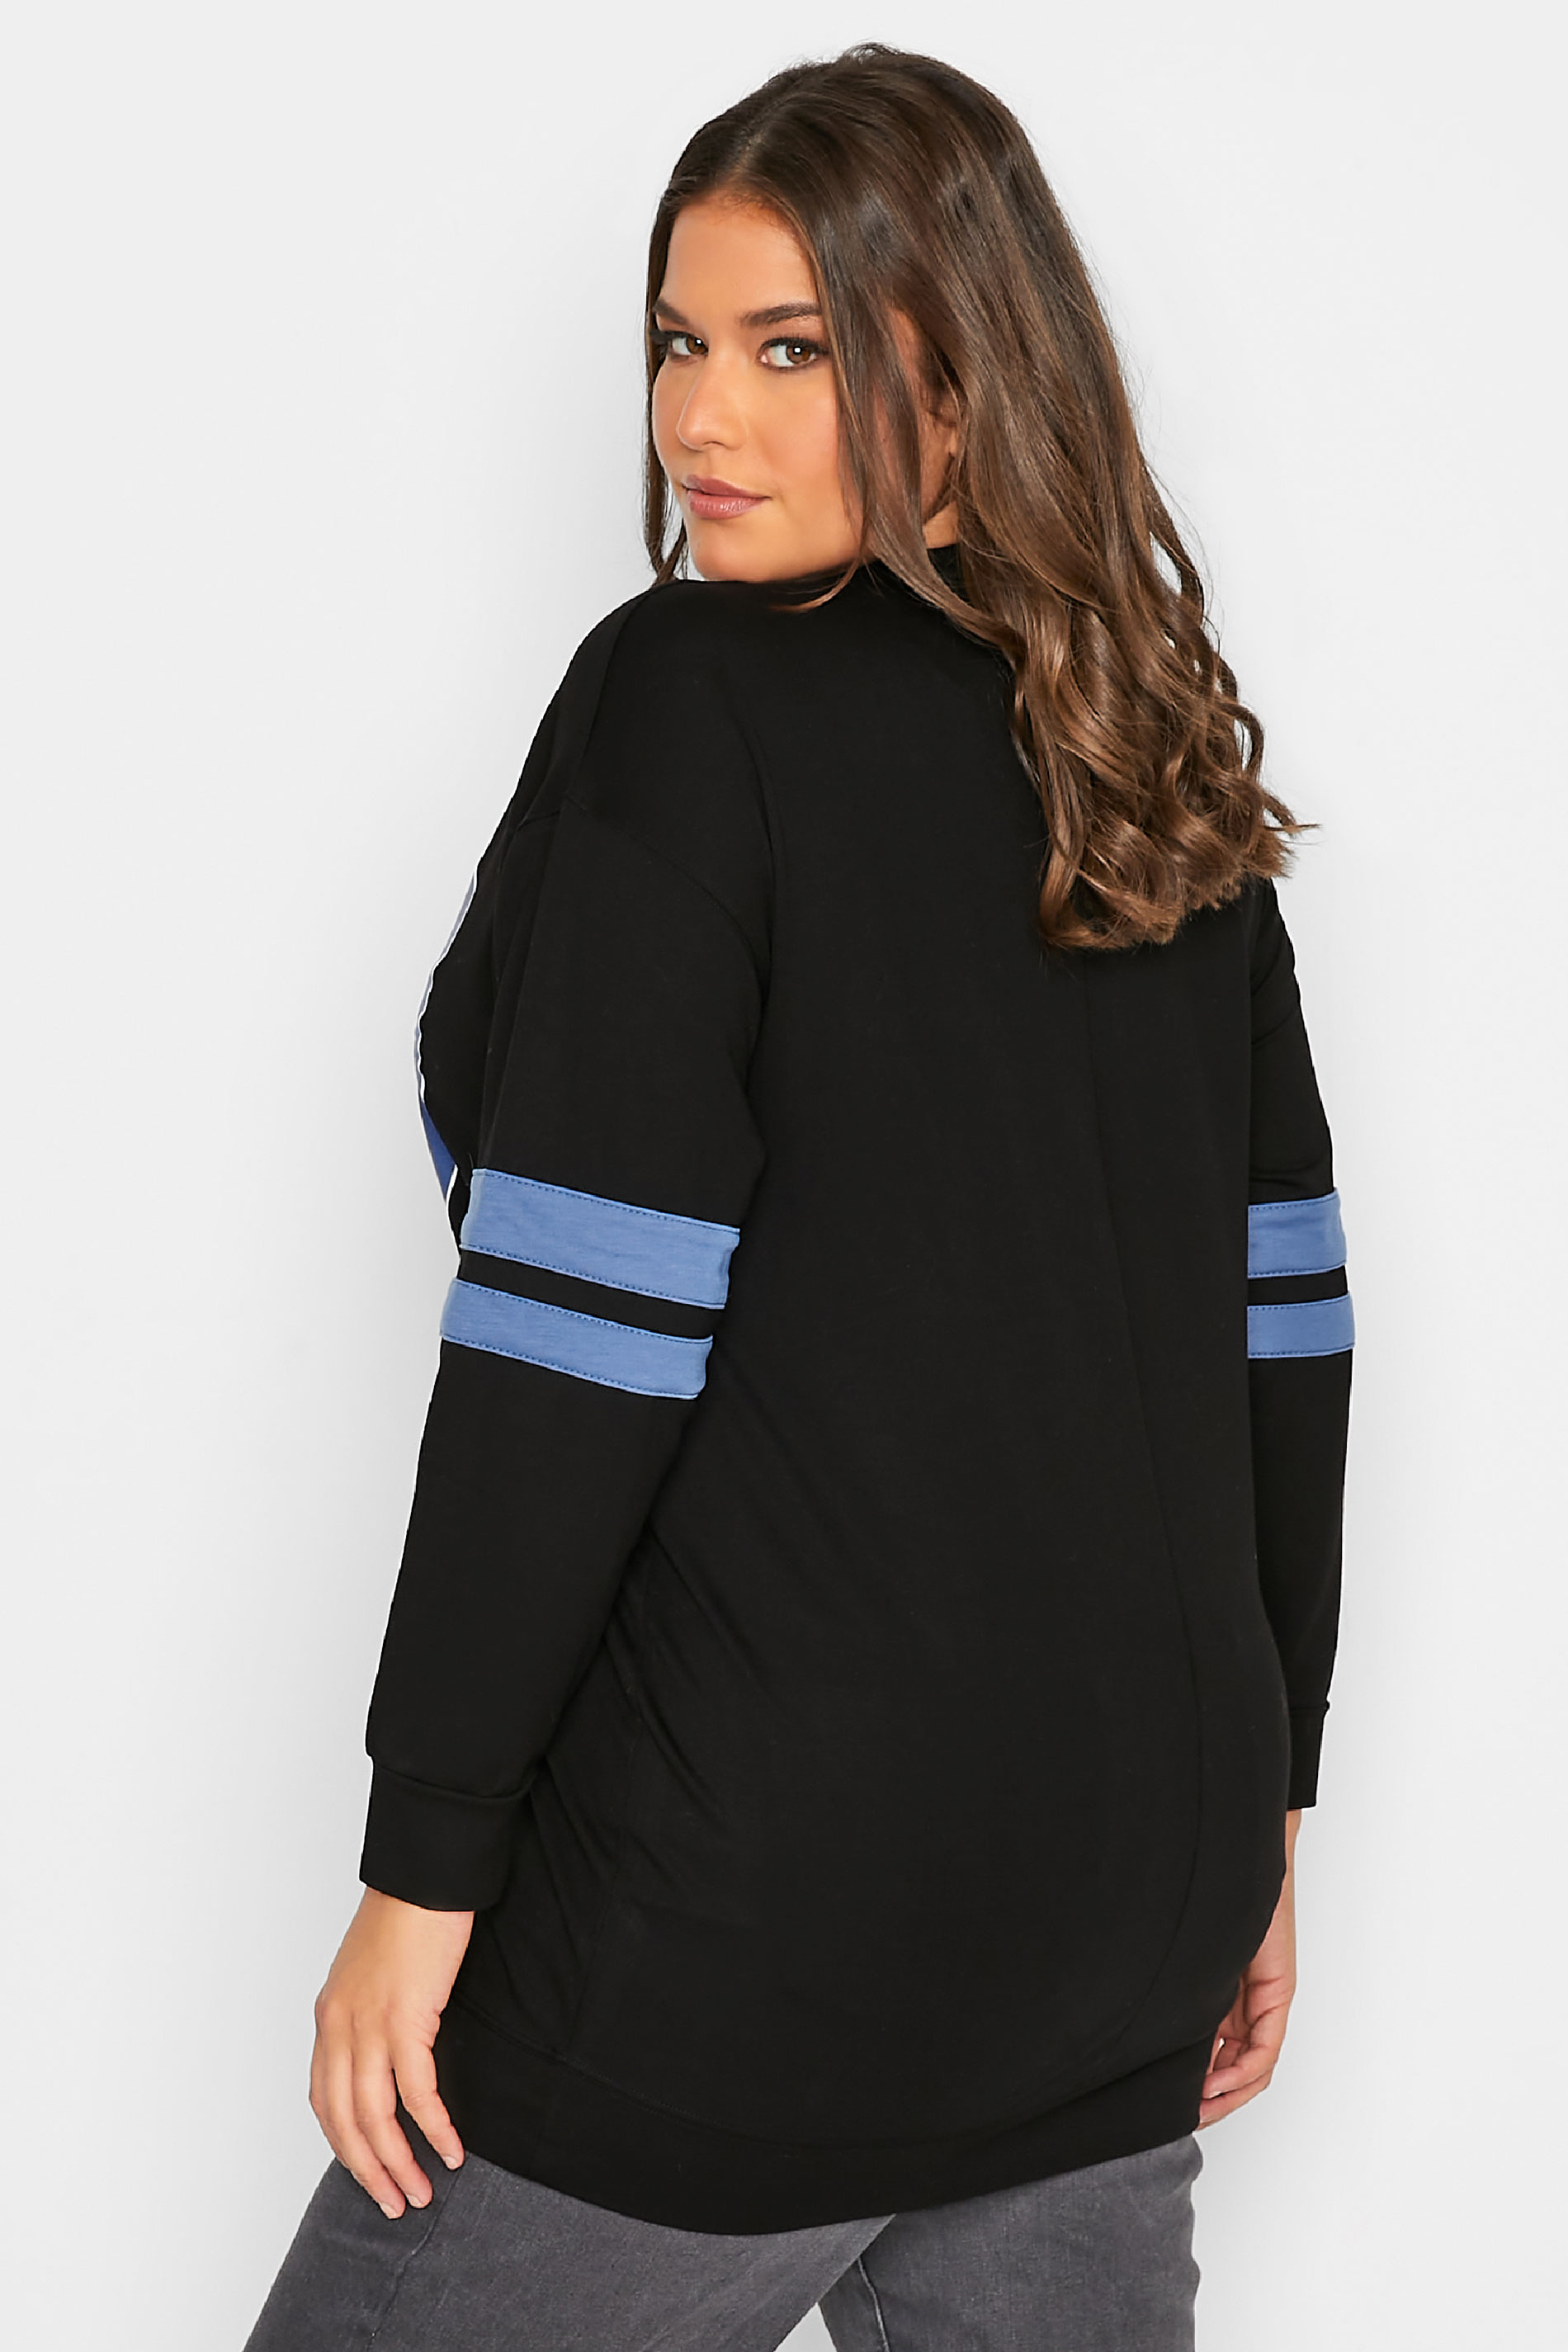 Plus Size Black '89 West Side' Varsity Sweatshirt | Yours Clothing 3